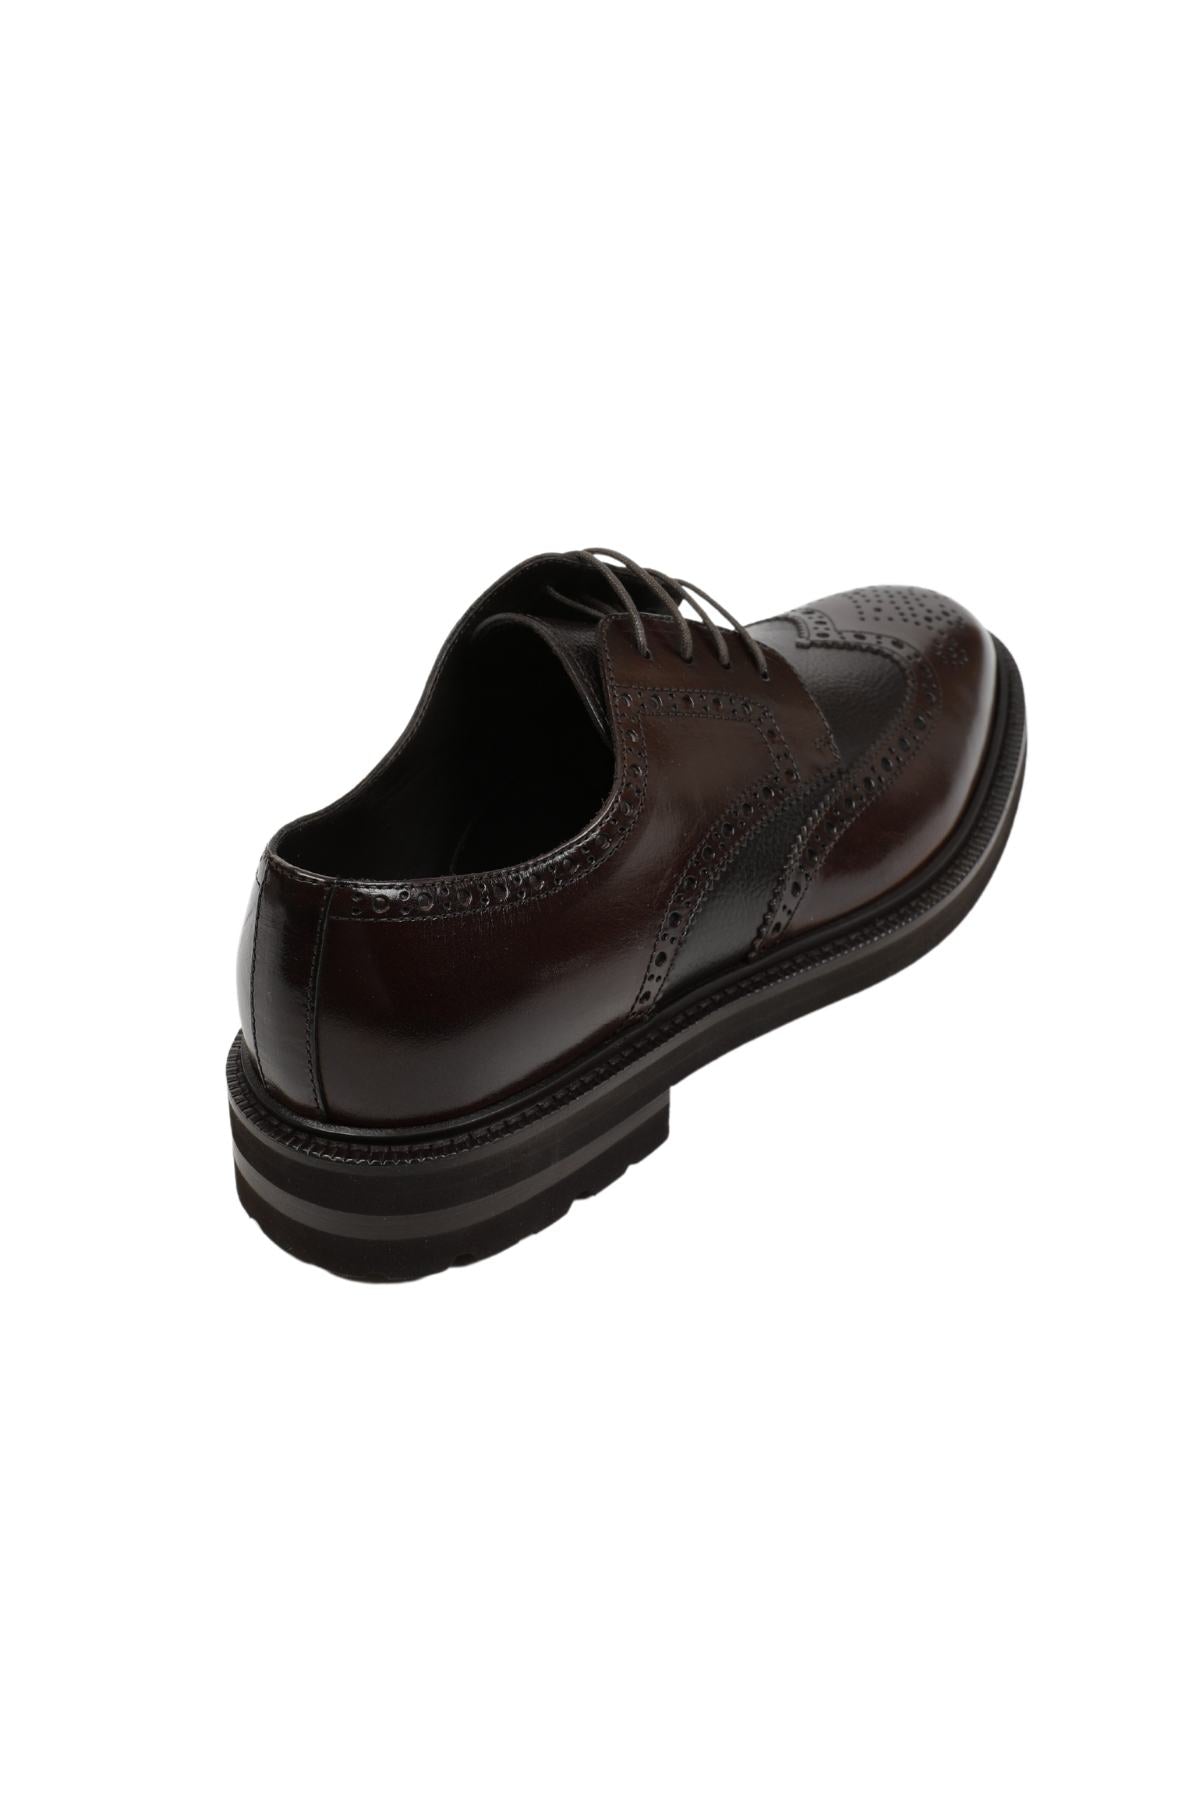 Henderson Vibram Taban Zımbalı Deri Casual Ayakkabı-Libas Trendy Fashion Store